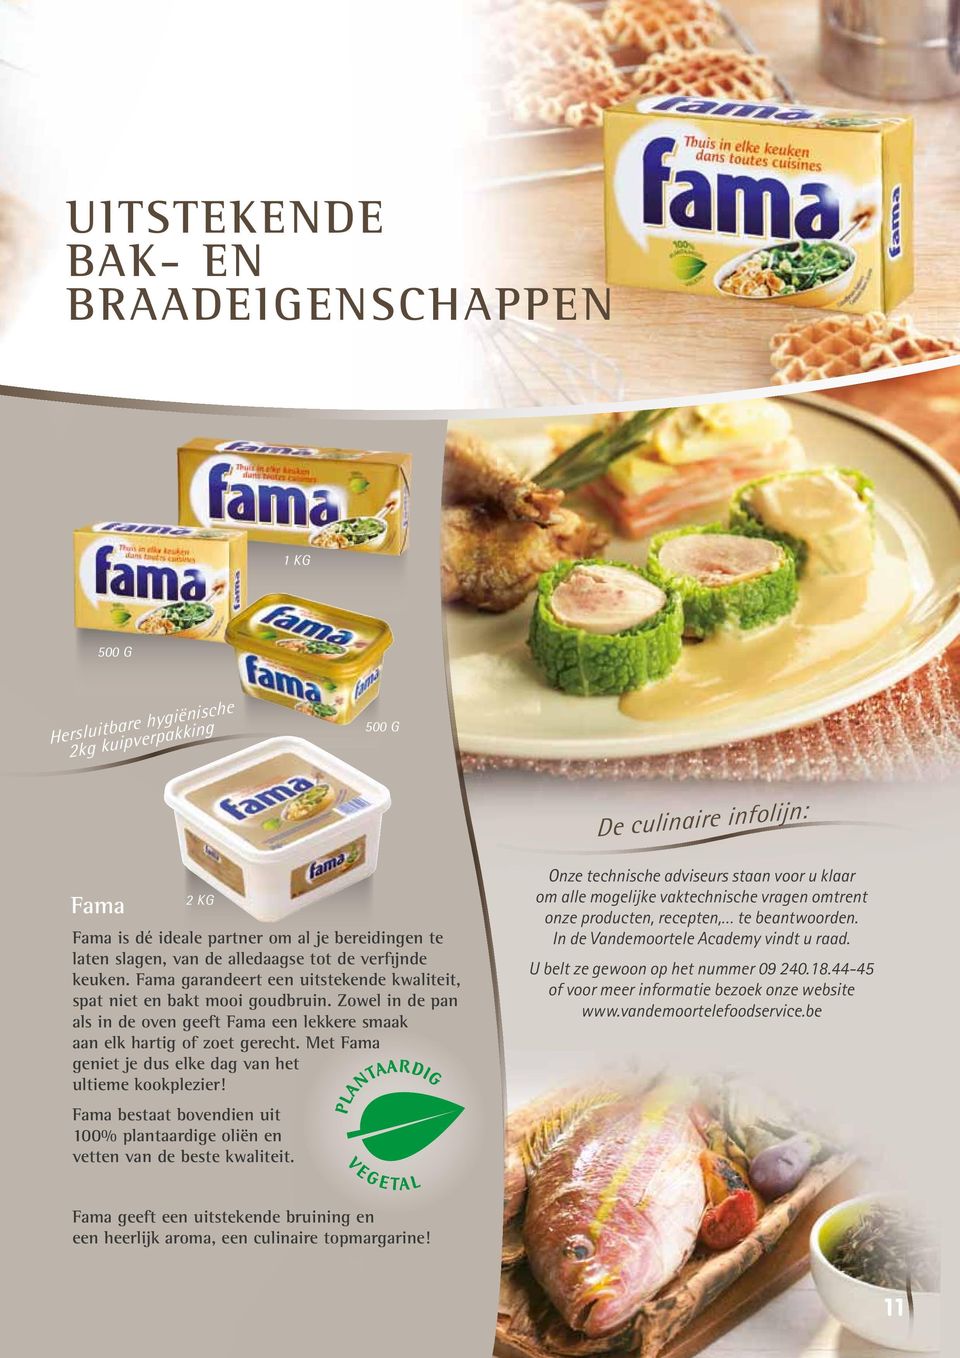 Zowel in de pan als in de oven geeft Fama een lekkere smaak aan elk hartig of zoet gerecht. Met Fama geniet je dus elke dag van het ultieme kookplezier!